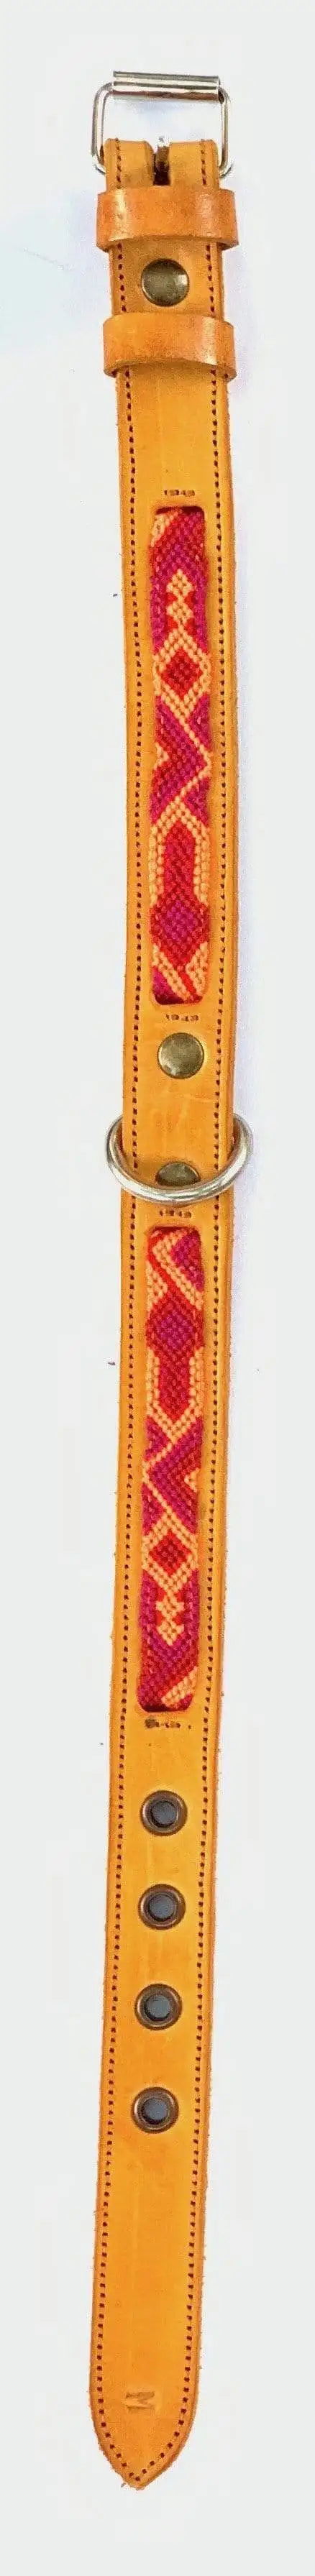 Double Detail Artisanal Handmade Dog Collars - 20